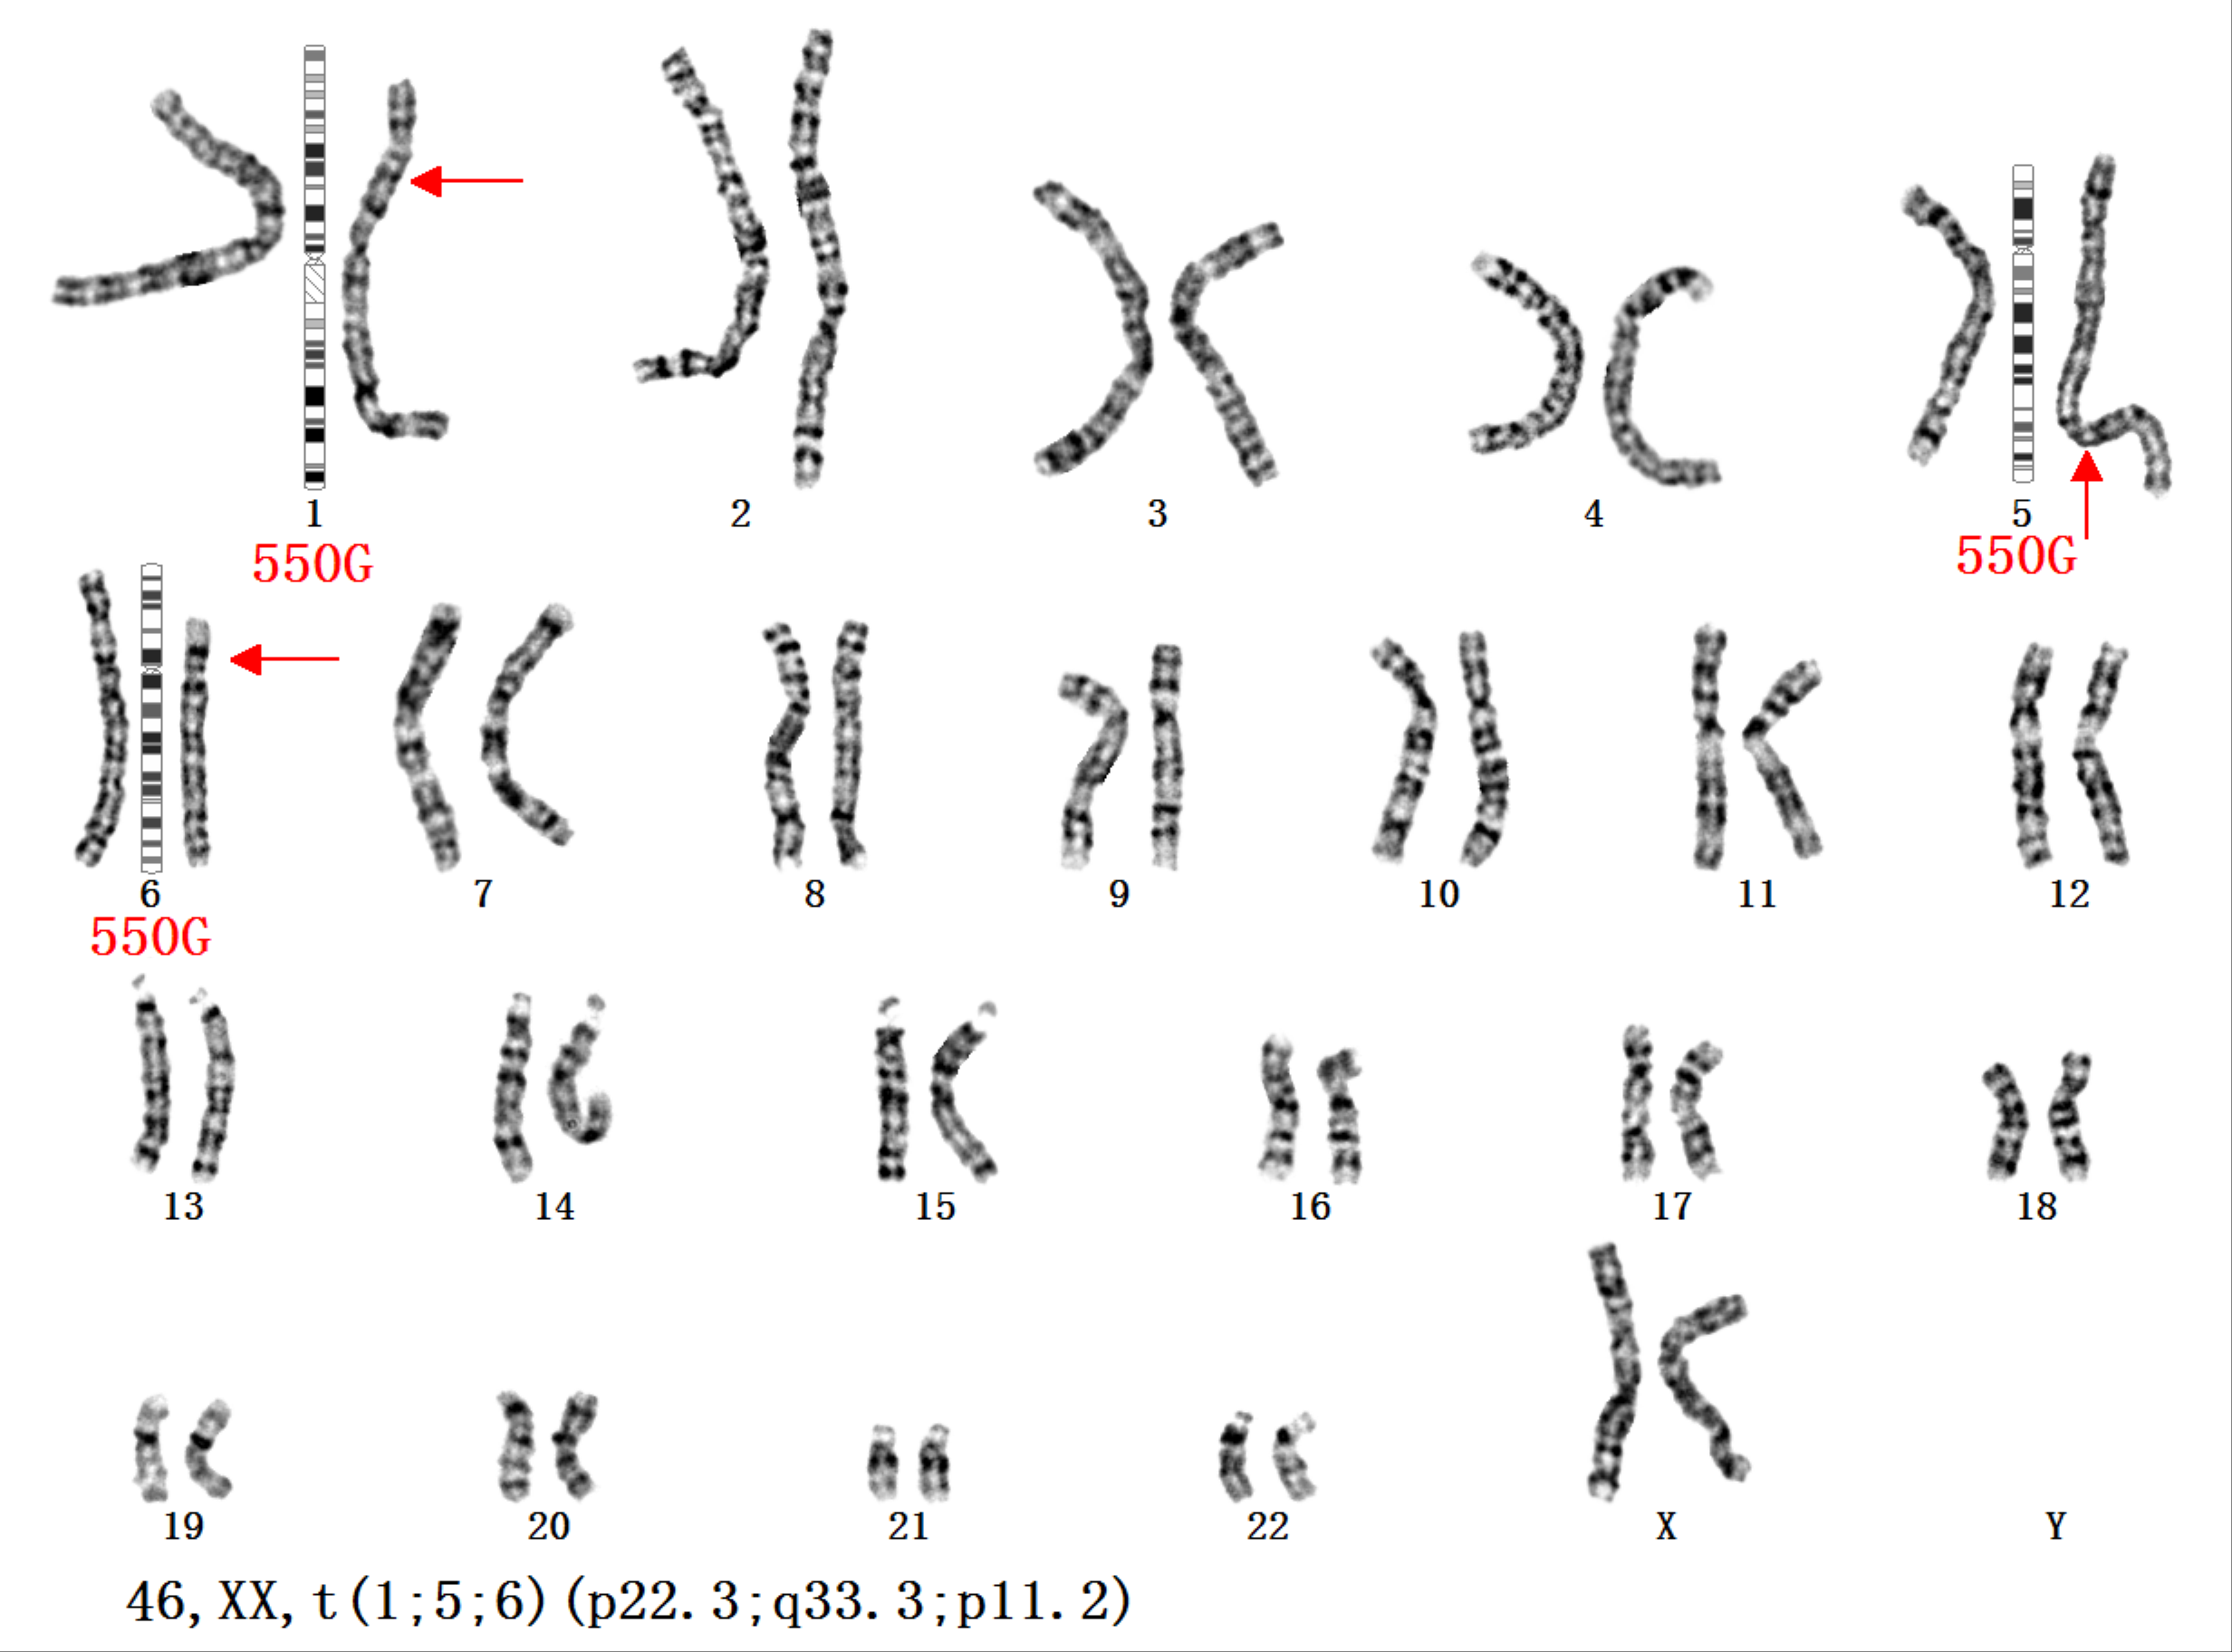 (2)罗伯逊易位:又称着丝粒融合,是近端着丝粒染色体的一种易位形式.